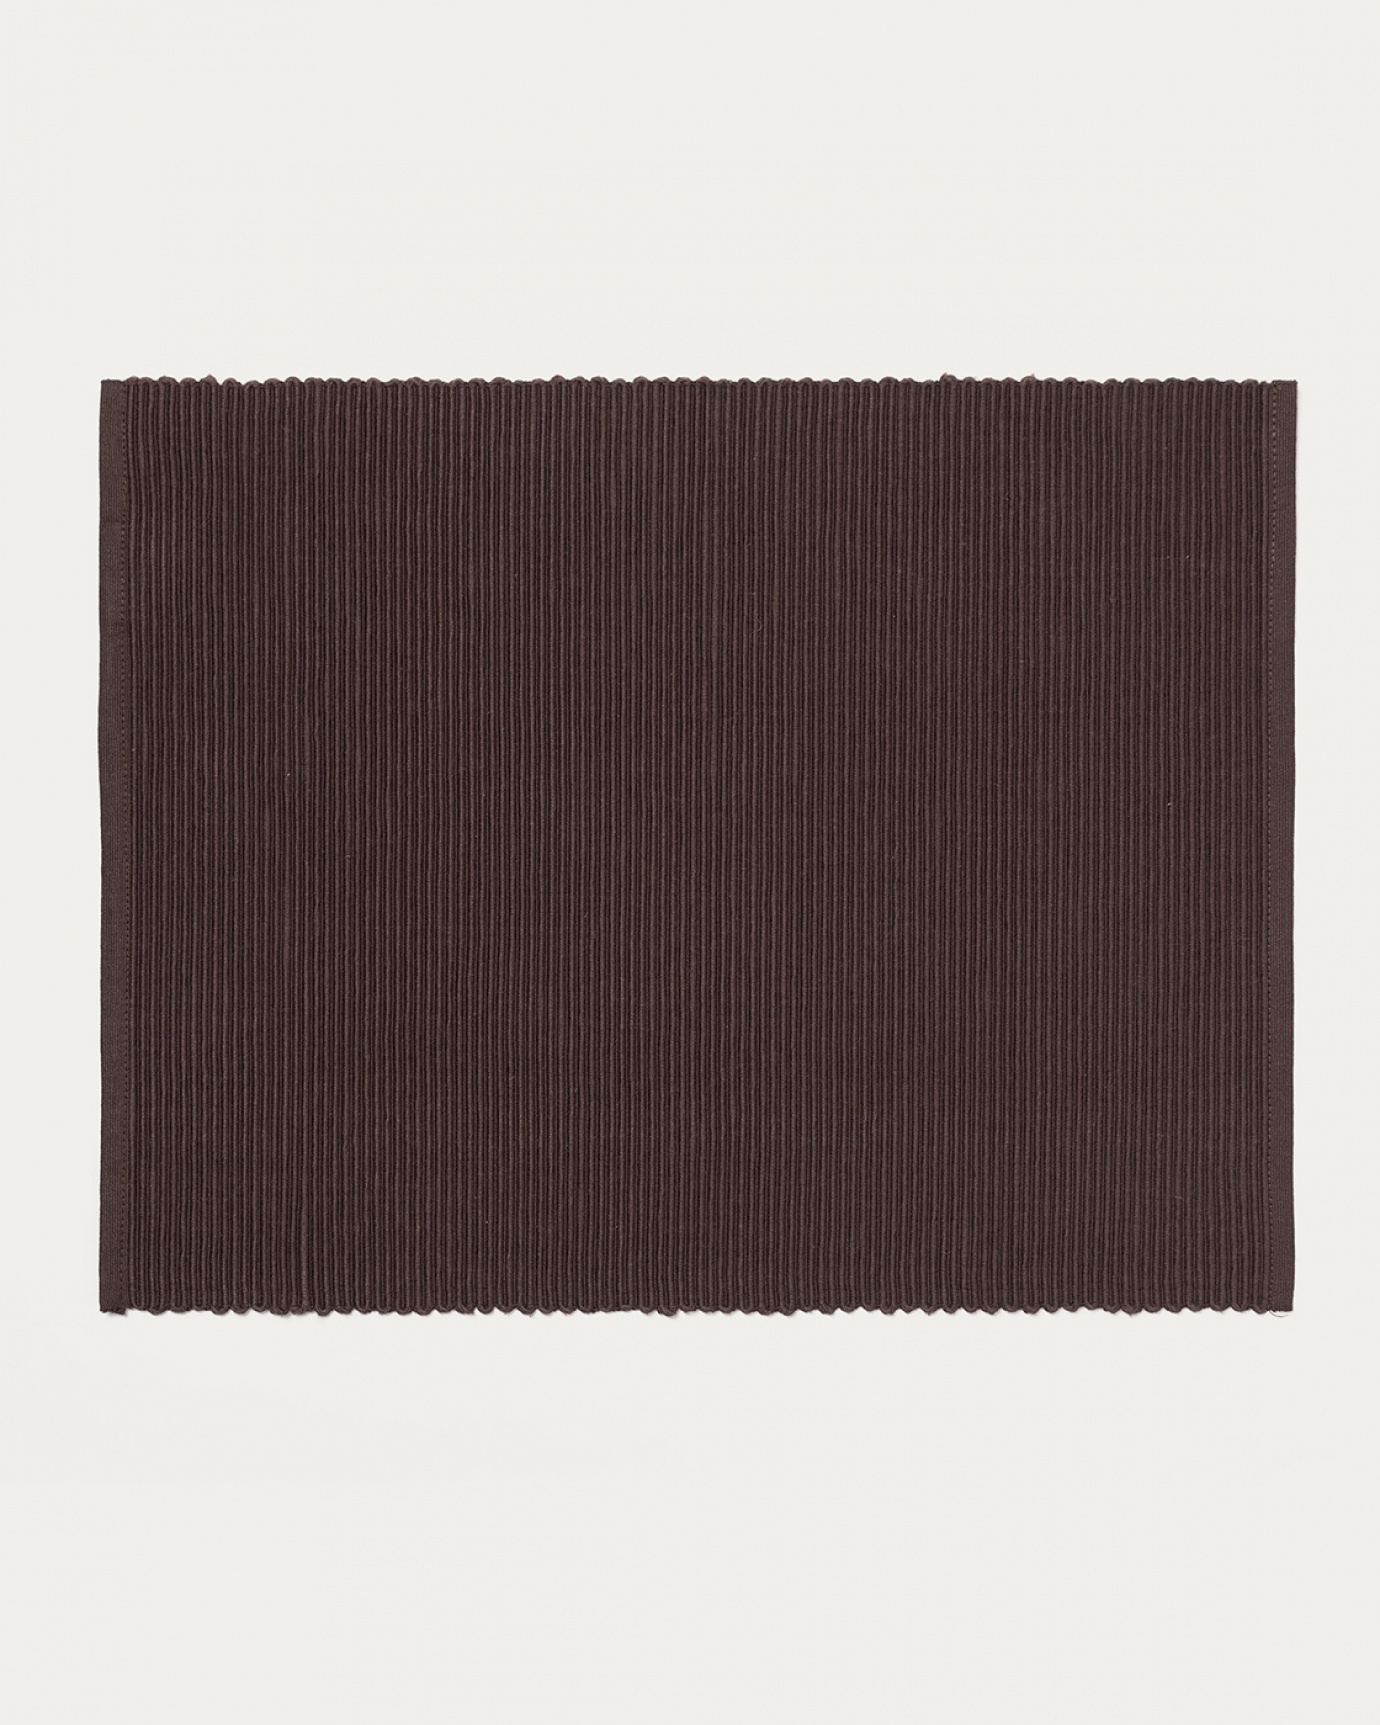 Produktbild dunkelbraun UNI Tischset aus weicher Baumwolle in Rippenqualität von LINUM DESIGN. Größe 35x46 cm und in 1er-Pack verkauft.